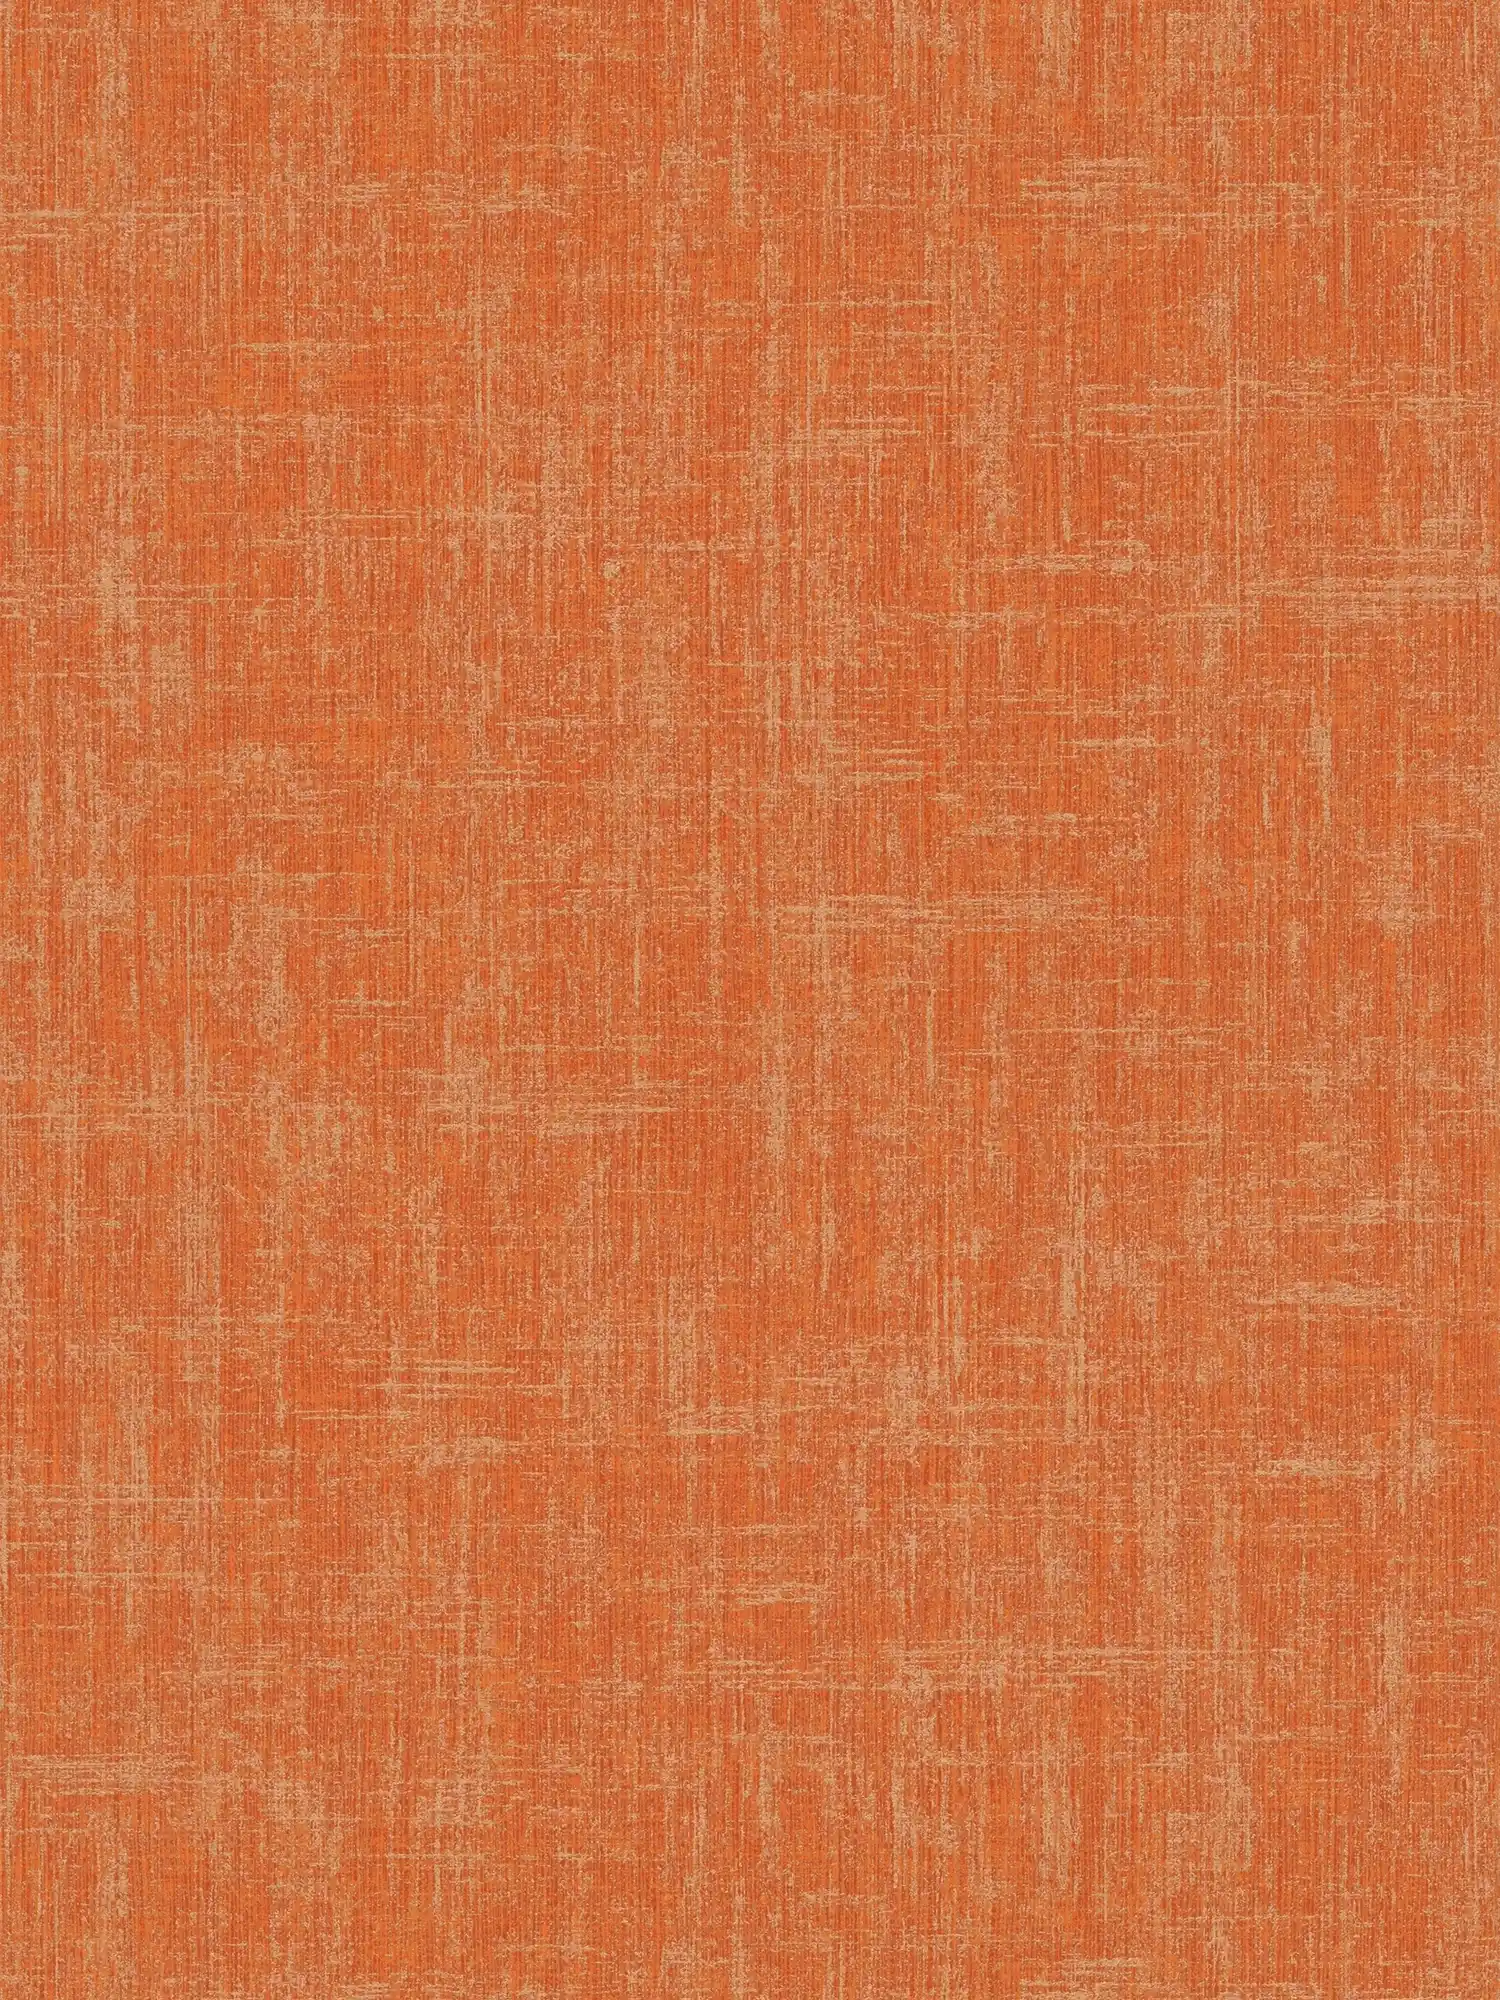 Orange wallpaper with linen texture design
